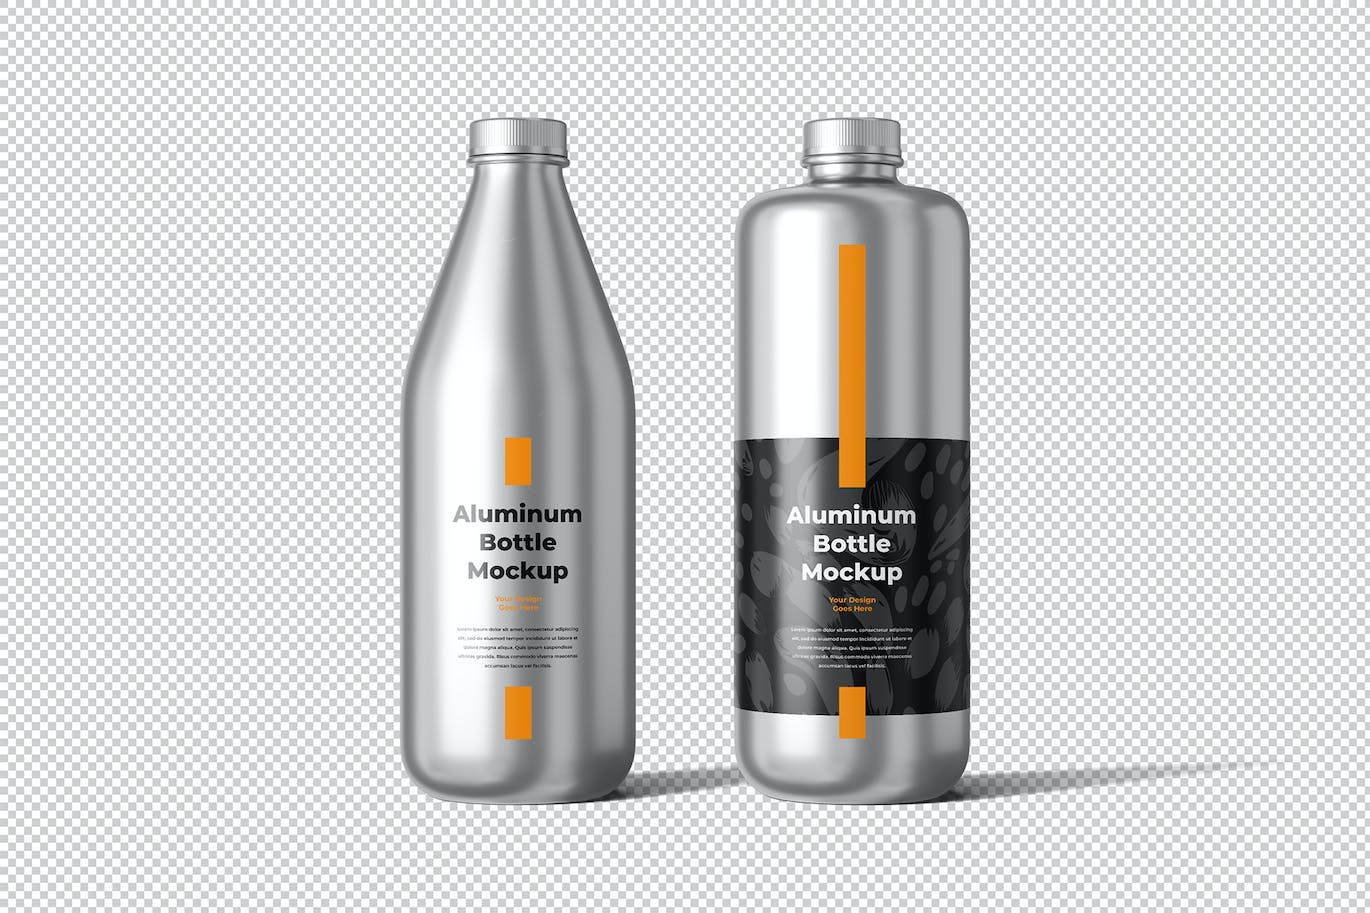 铝瓶饮水瓶包装设计样机 Aluminum Bottle Mockup 样机素材 第4张